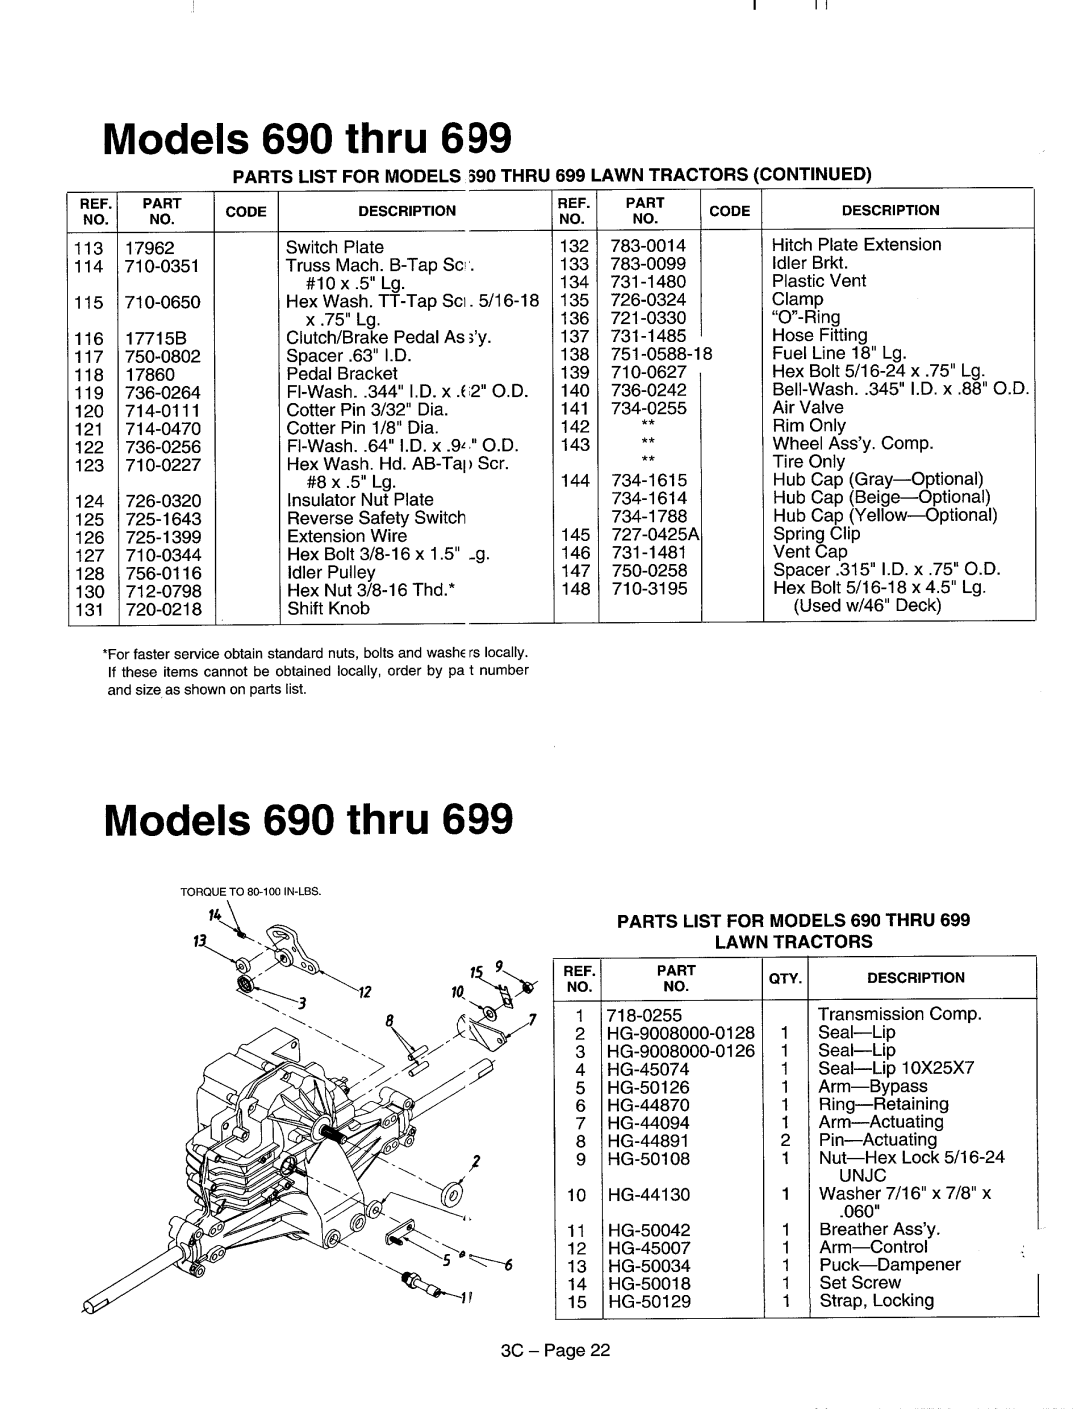 MTD 600-609, 690-699 manual 